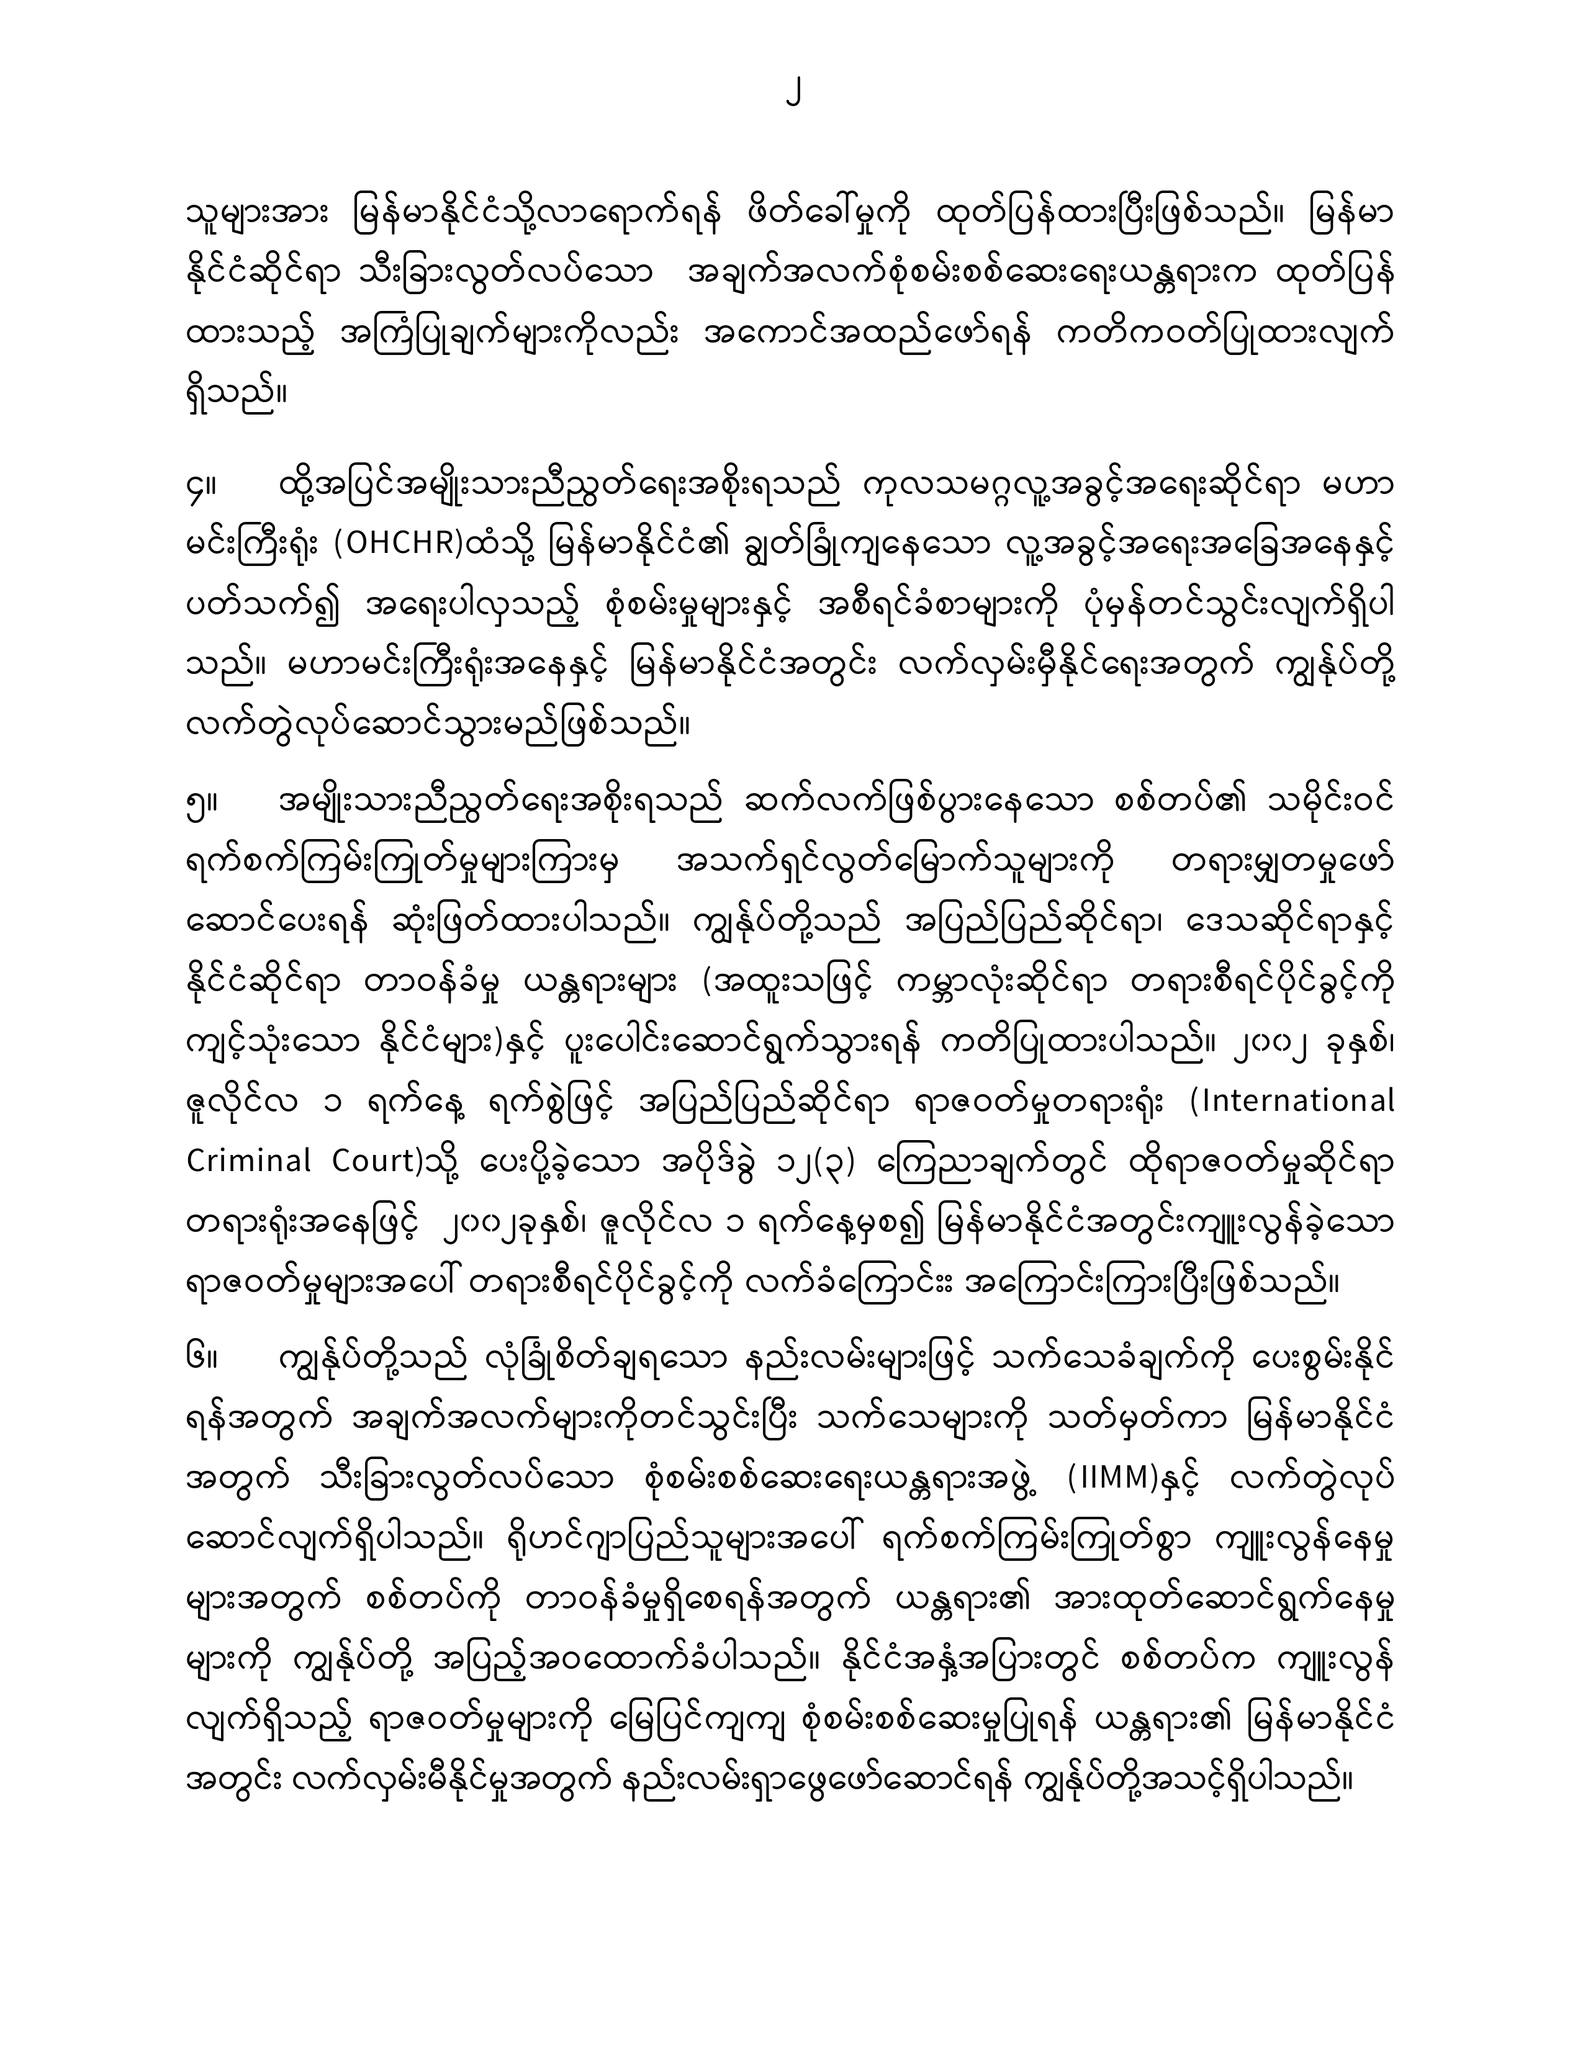 ကုလသမဂ္ဂလူ့အခွင့်အရေးကောင်စီ (၅၄) ကြိမ်မြောက် အစည်းအဝေး ပြည်ထောင်စုသမ္မတမြန်မာနိုင်ငံတော်၏ လူ့အခွင့်အရေးဆိုင်ရာရပ်တည်ချက်အပေါ် ထုတ်ပြန်ကြေညာချက်